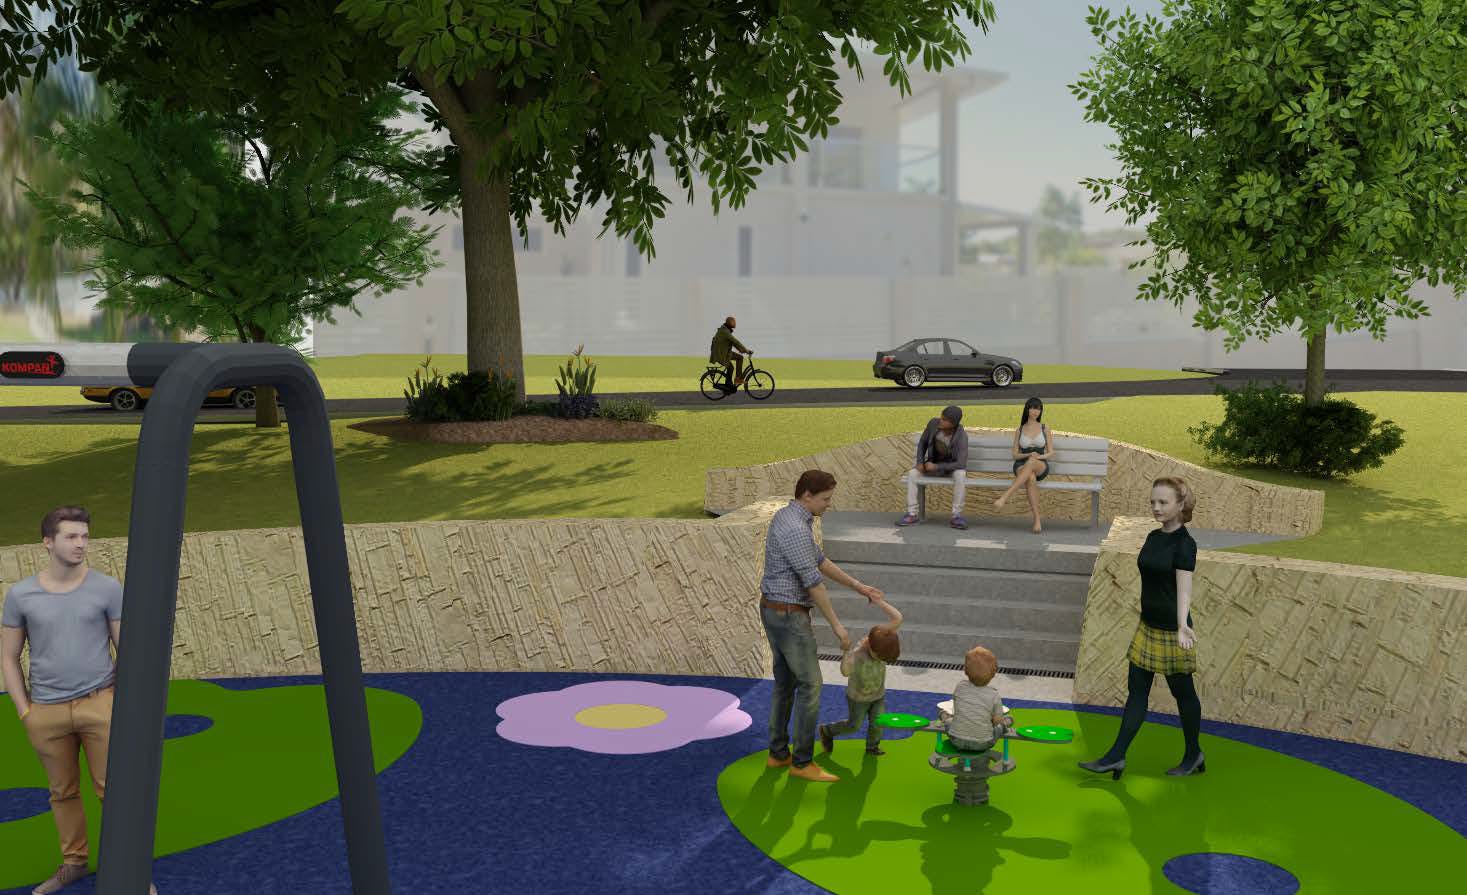 Weir Park Playground Improvements - Concept Design 